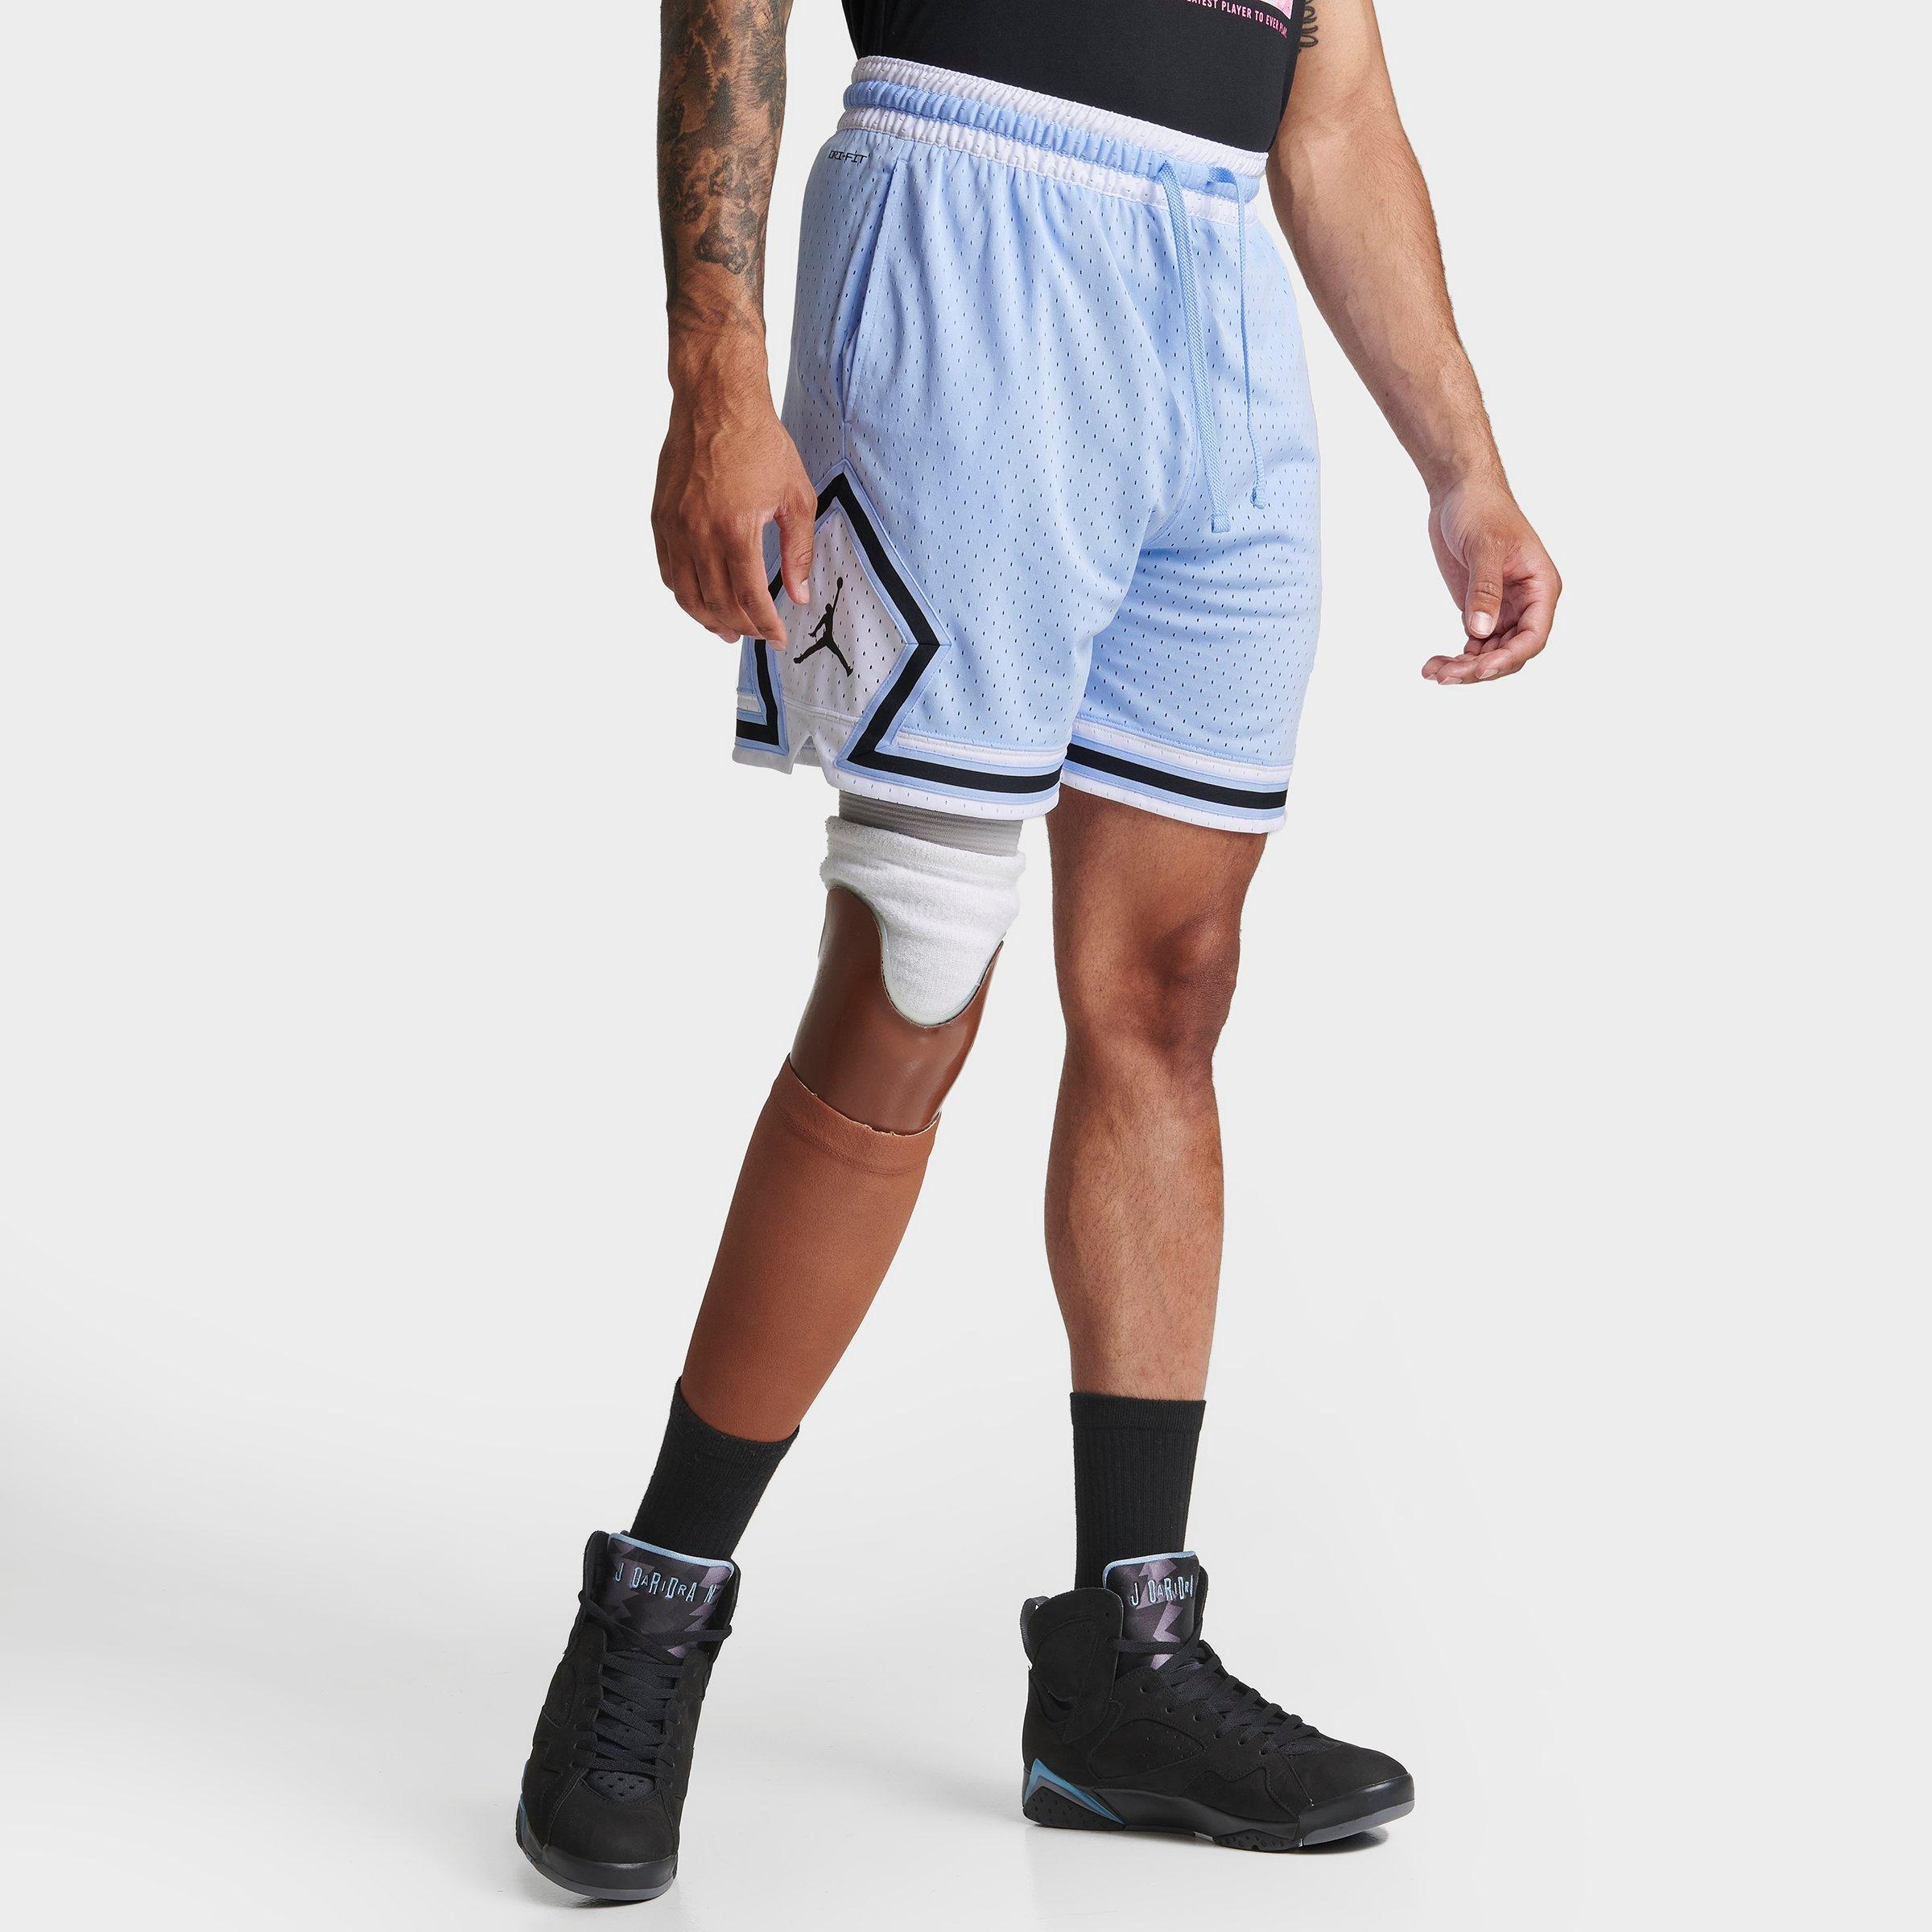 Nike Jordan Men's Dri-fit Sport Diamond Basketball Shorts In Royal Tint/white/black/black